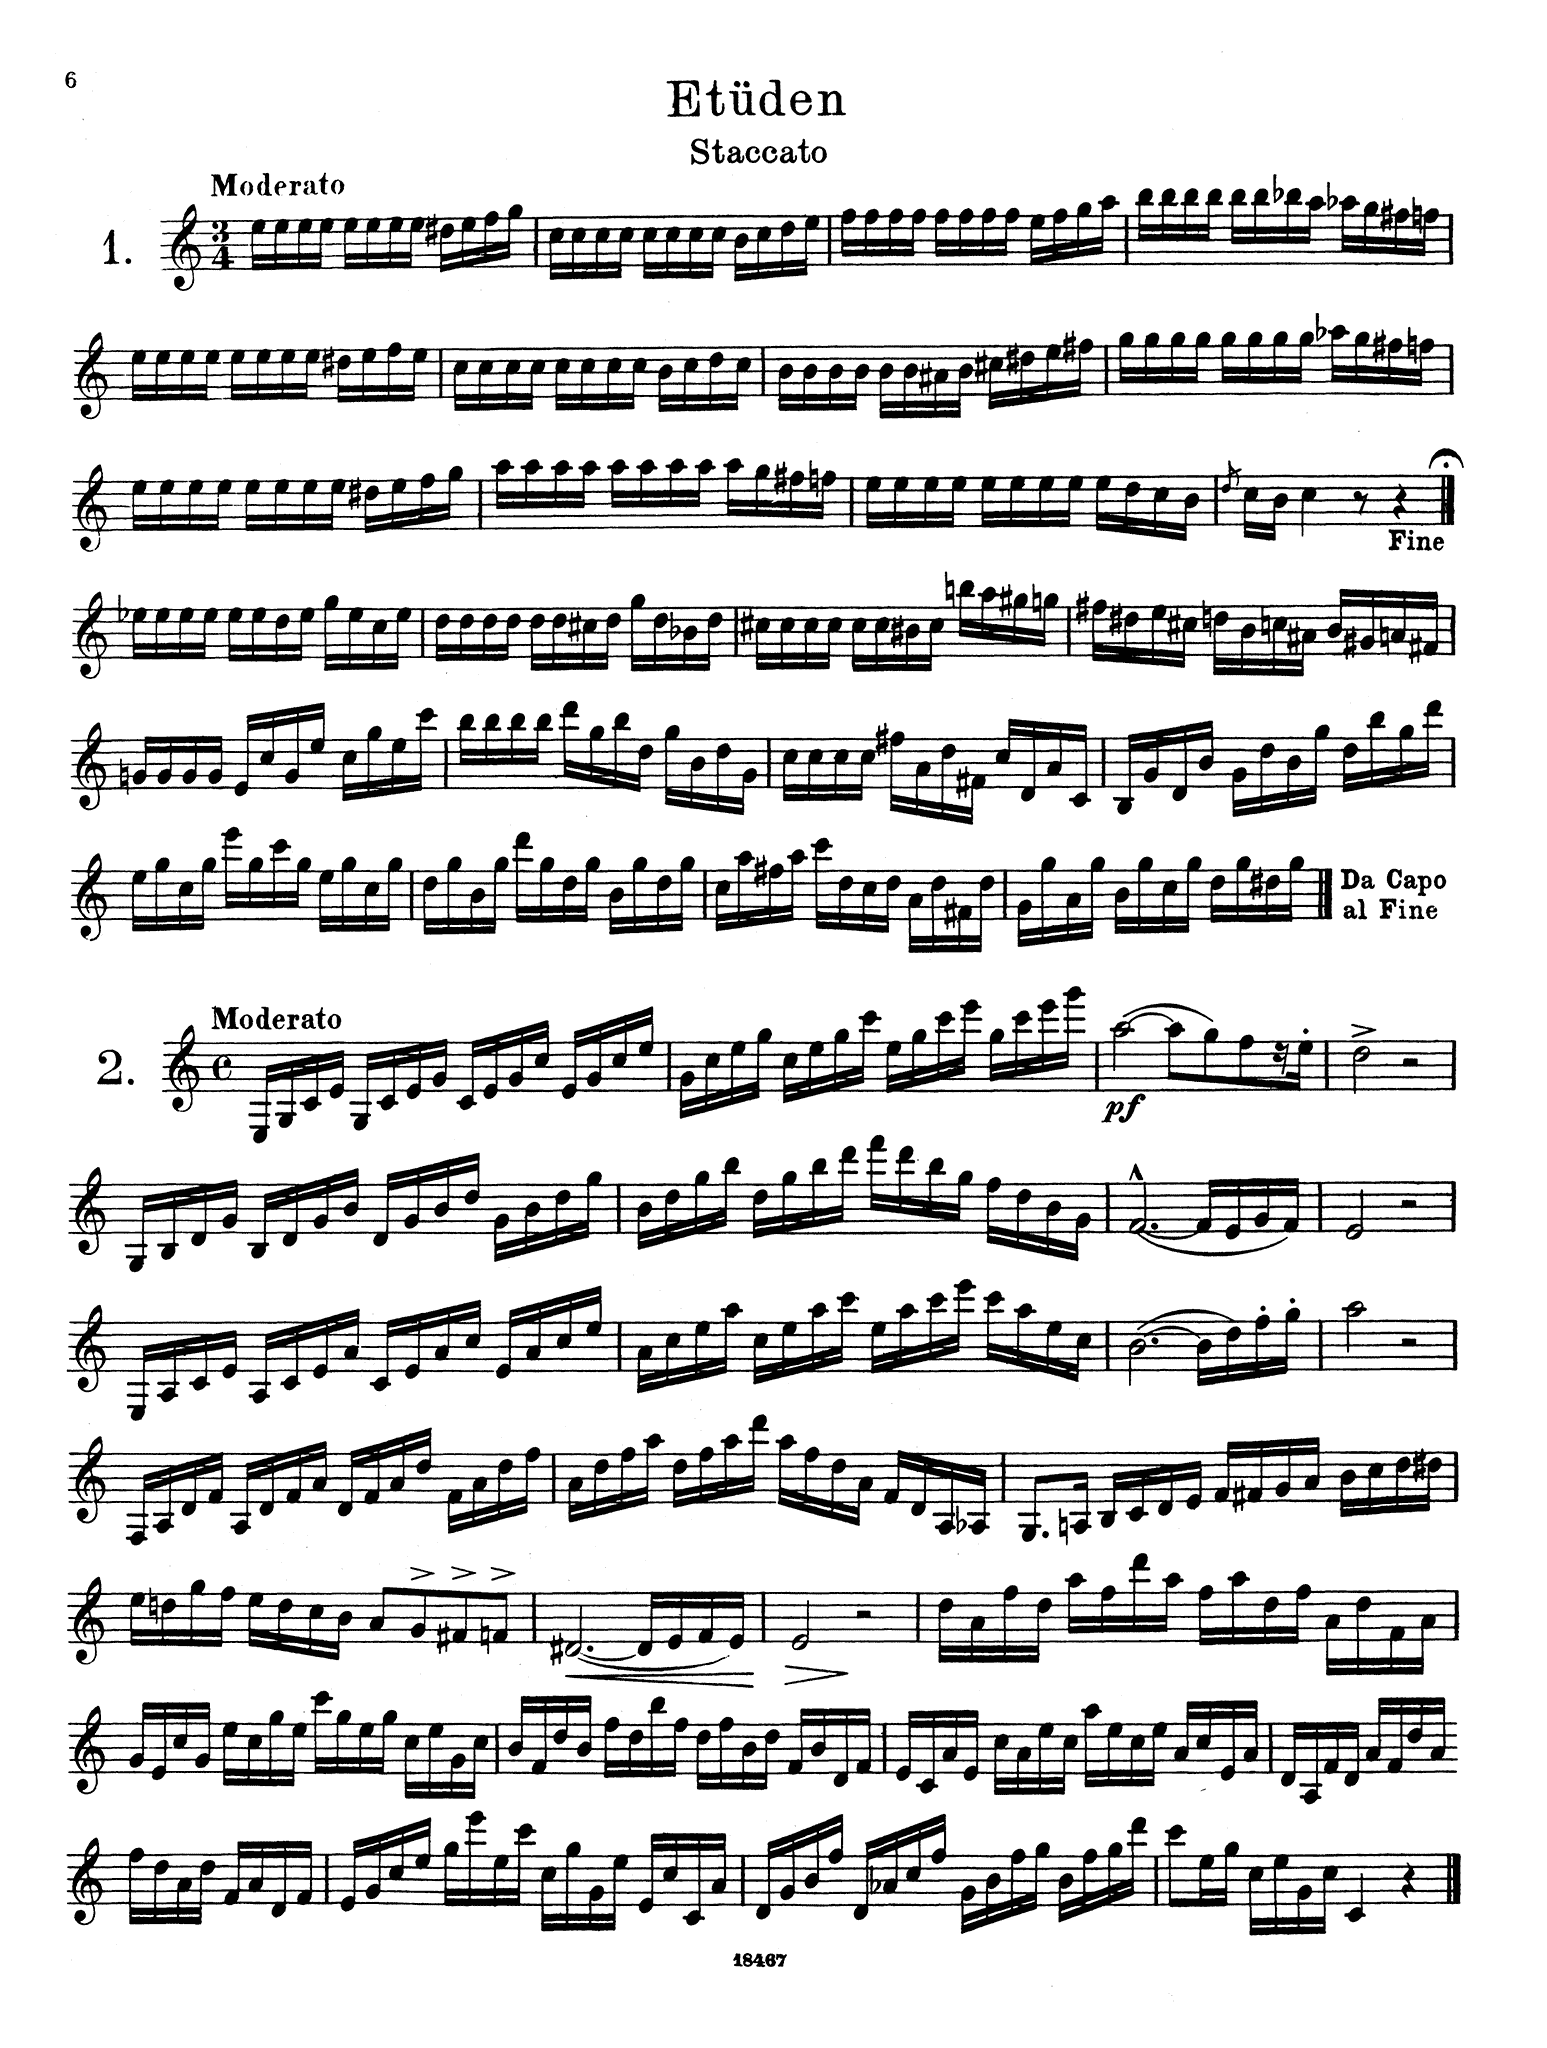 Wiedemann Clarinet Studies, Book 4 page 6